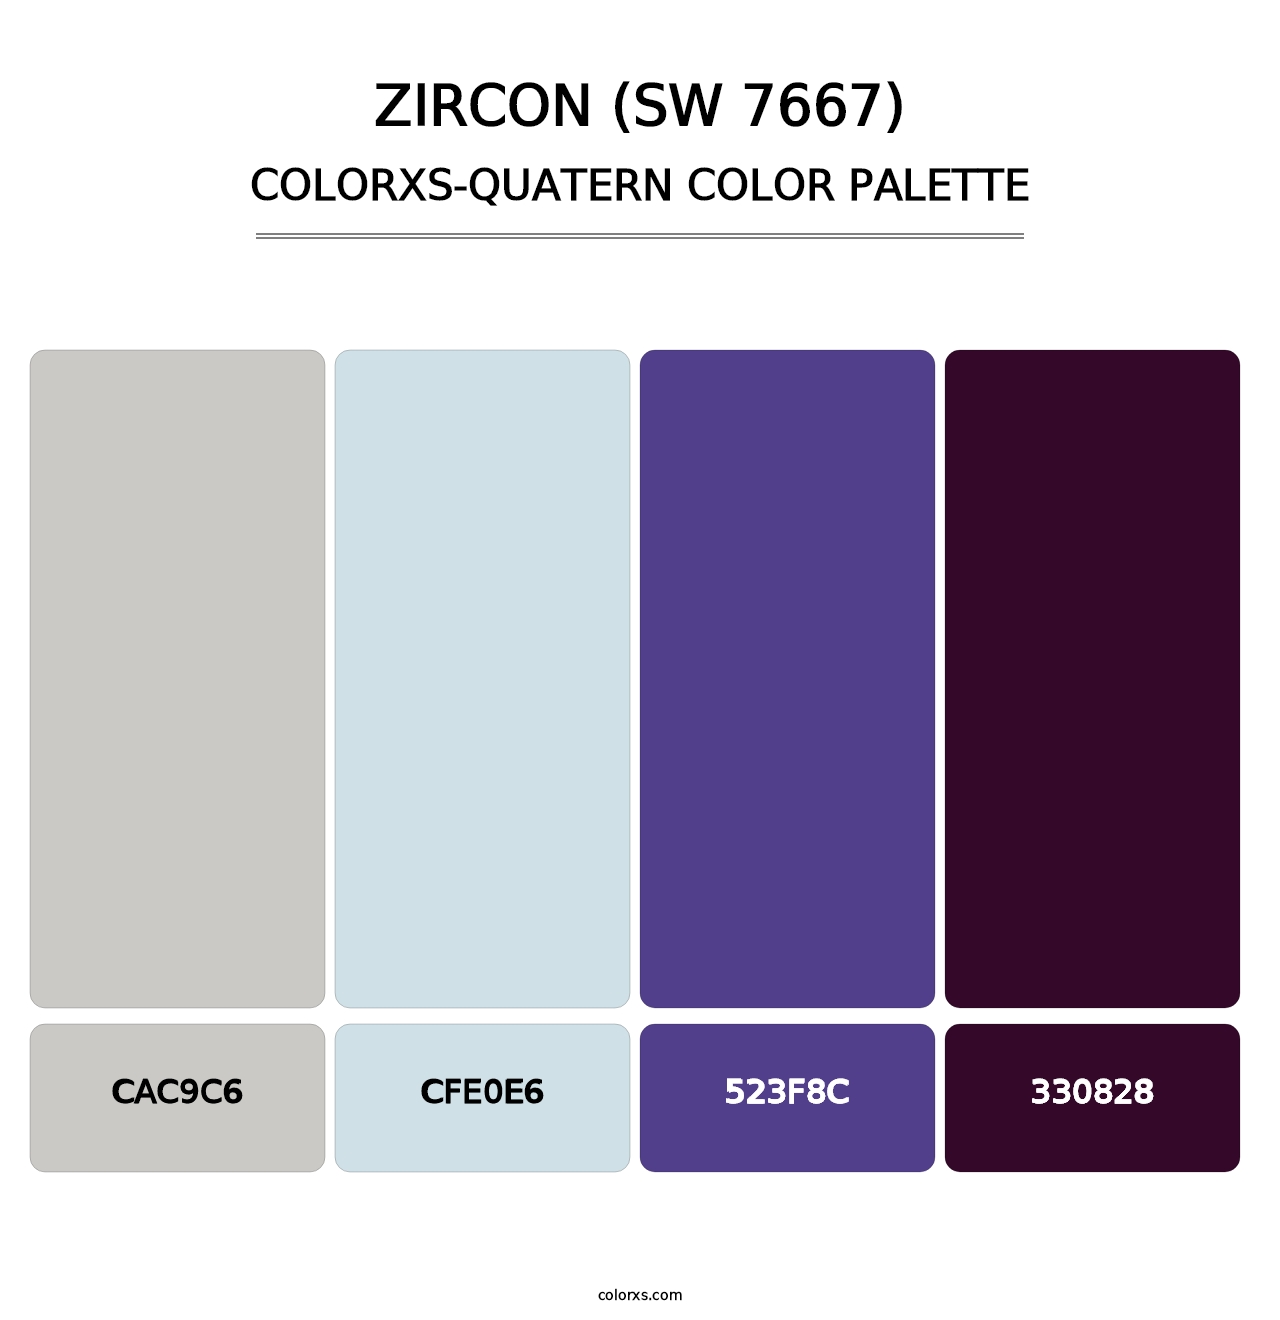 Zircon (SW 7667) - Colorxs Quatern Palette